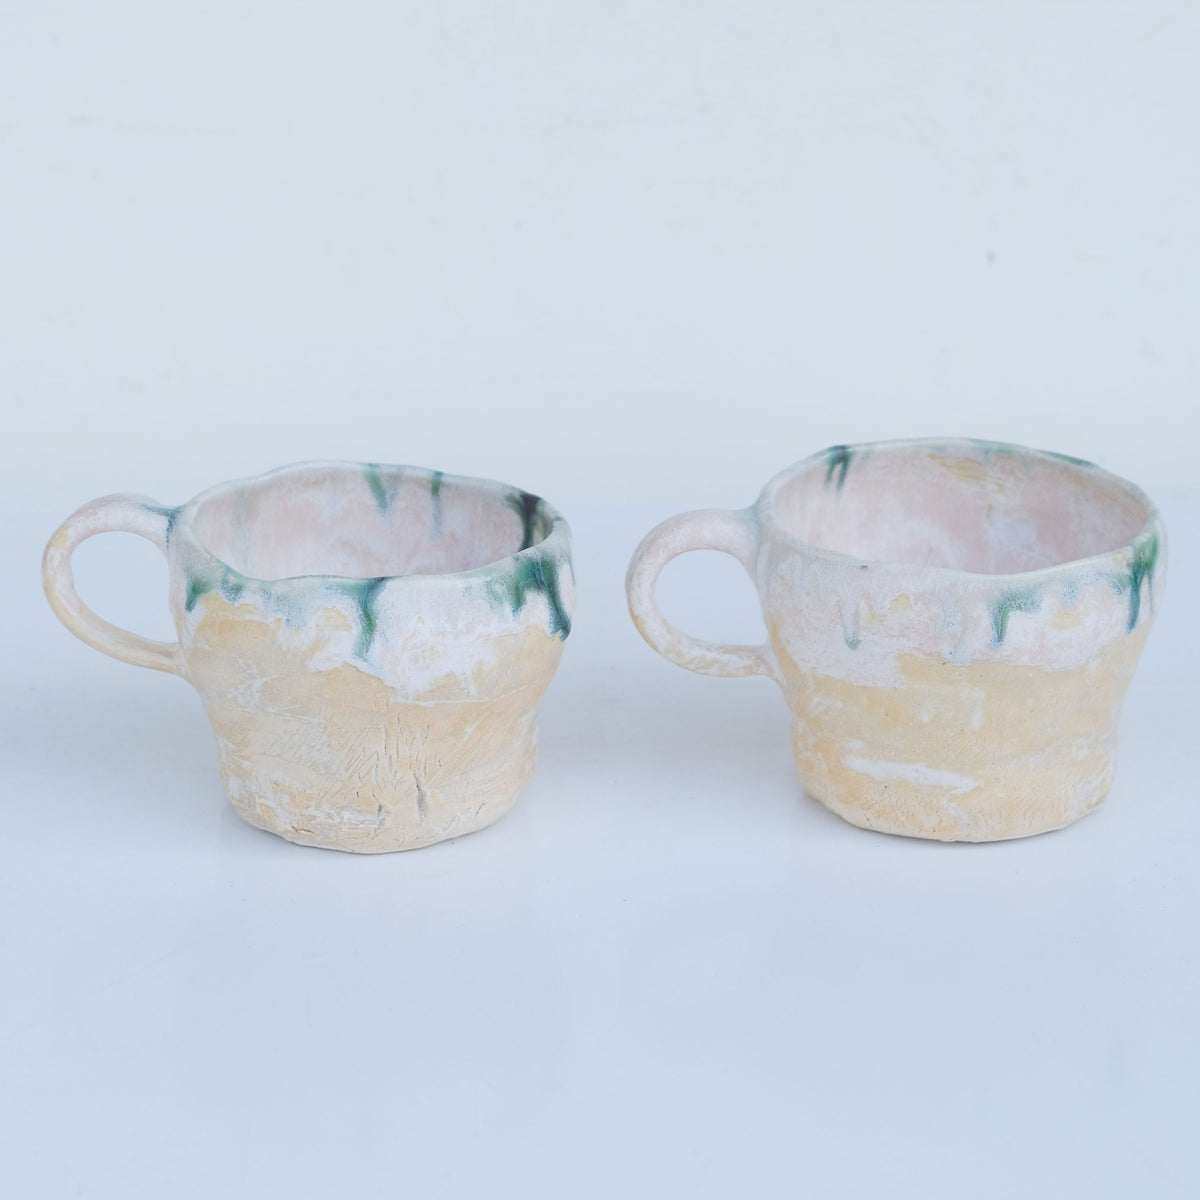 Ge Kiln Tall Green Drip Glaze Ceramic Teacup - Seven Cups